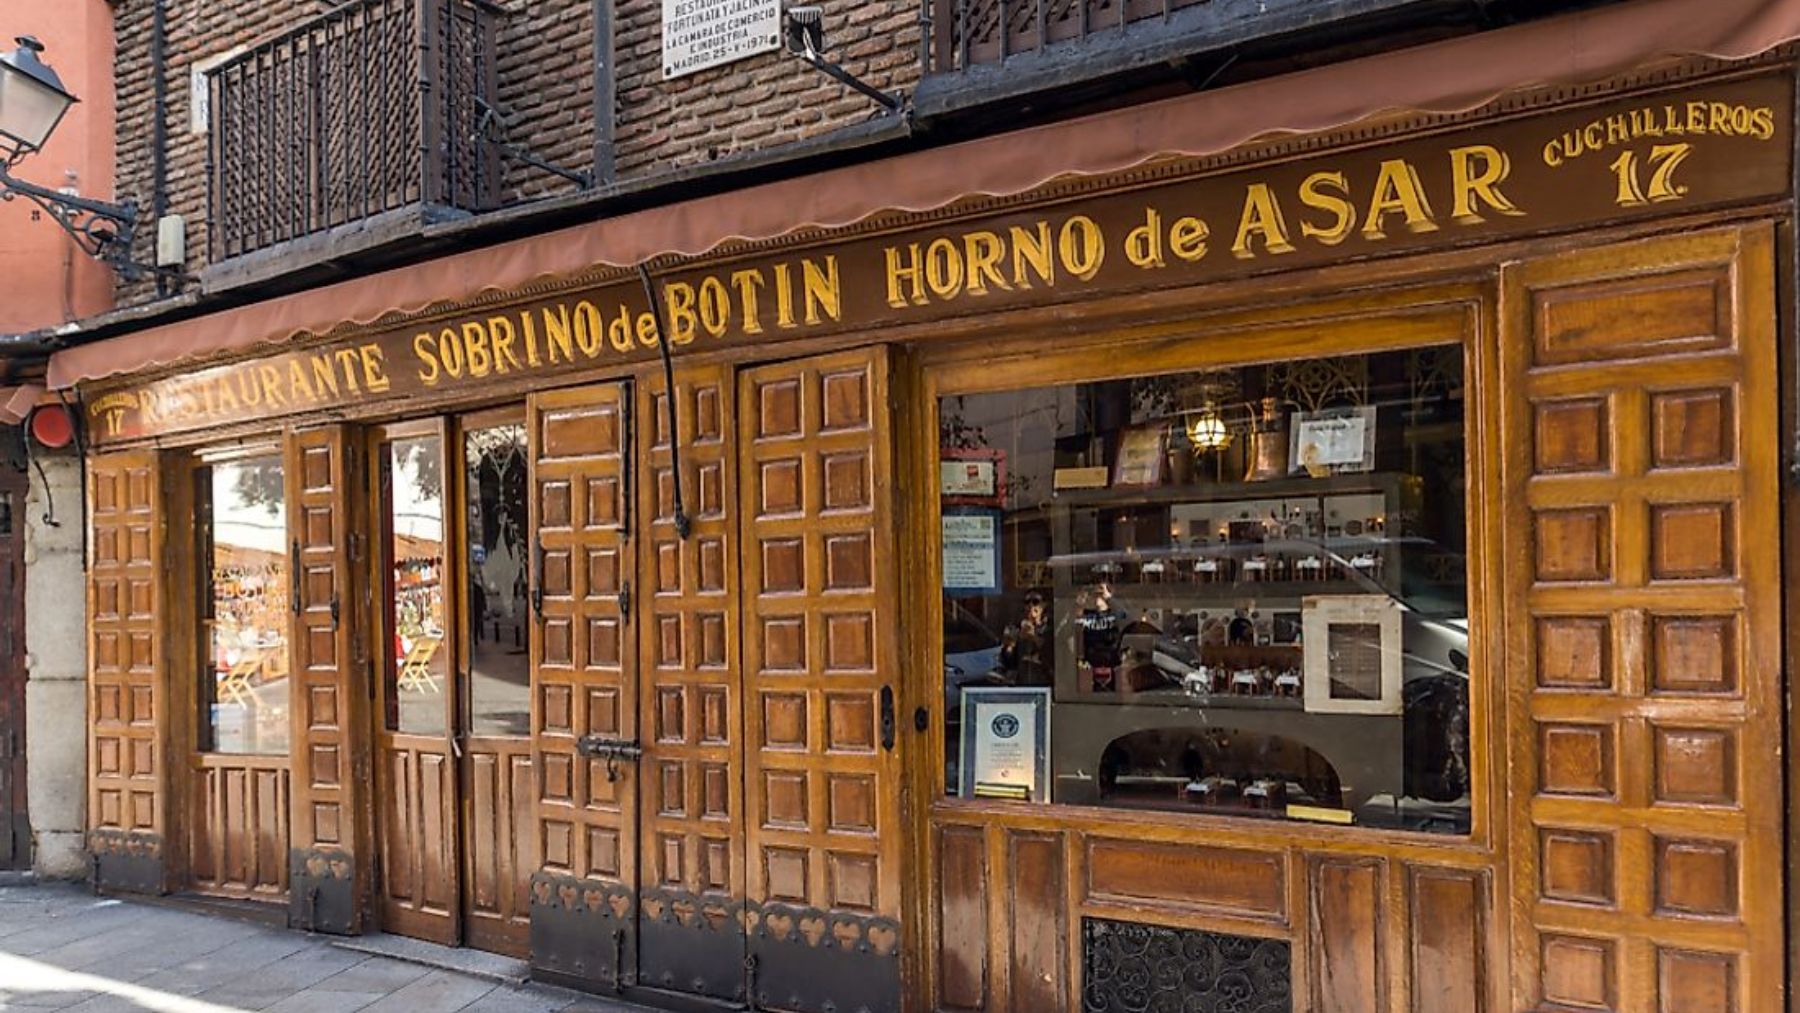 Descubre algunos de los restaurantes más antiguos en e mundo